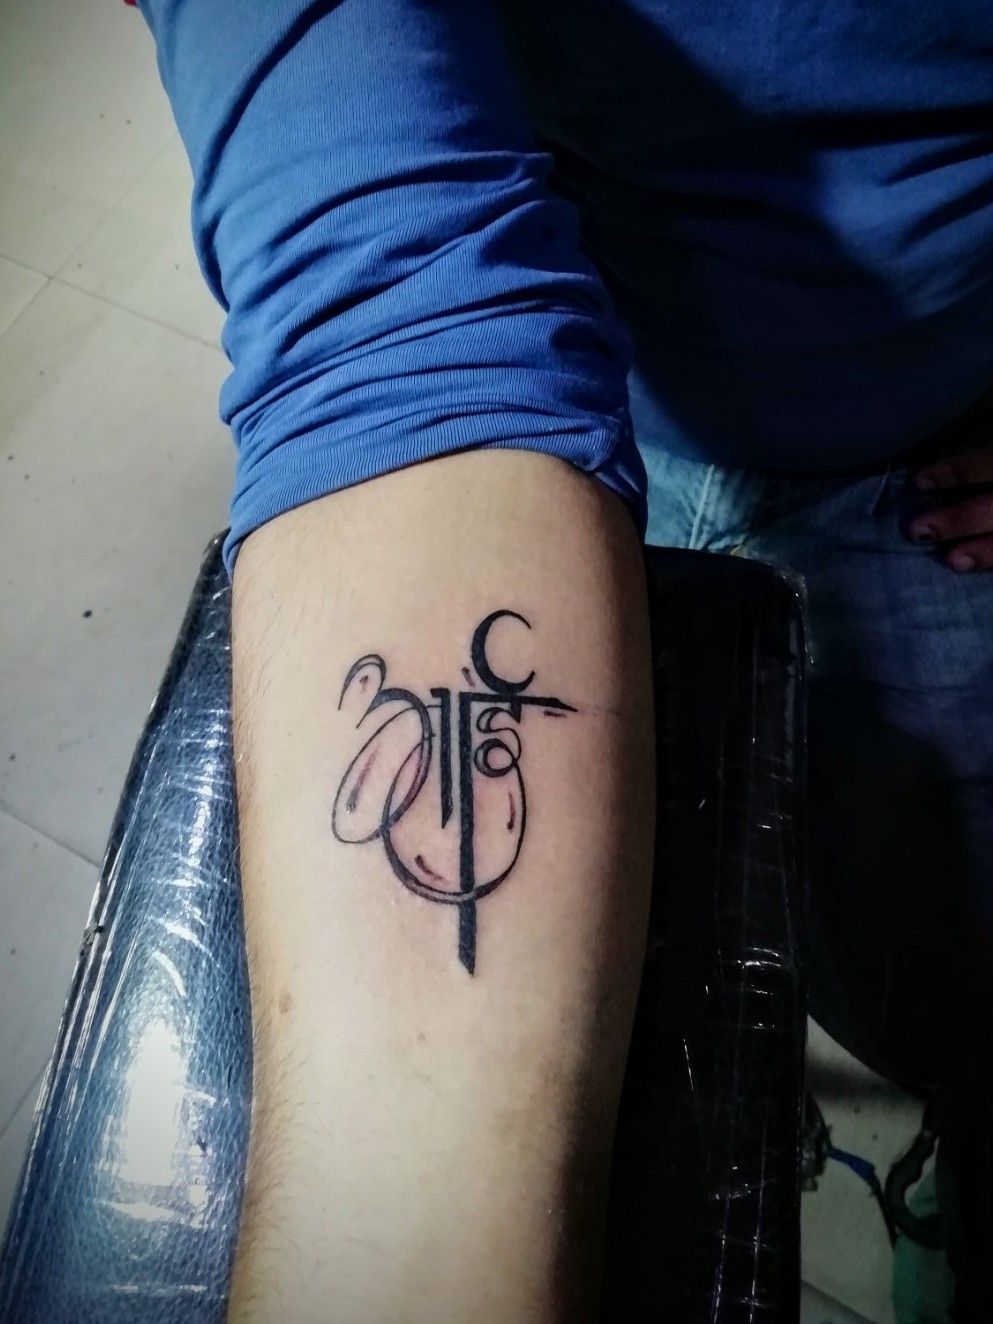 Tattoo uploaded by Get Ink'D by MANAV HUDDA • #getinkDTattooStudio #getinkd  #work #letteringtattoo #tattoodo #maatattoo • Tattoodo